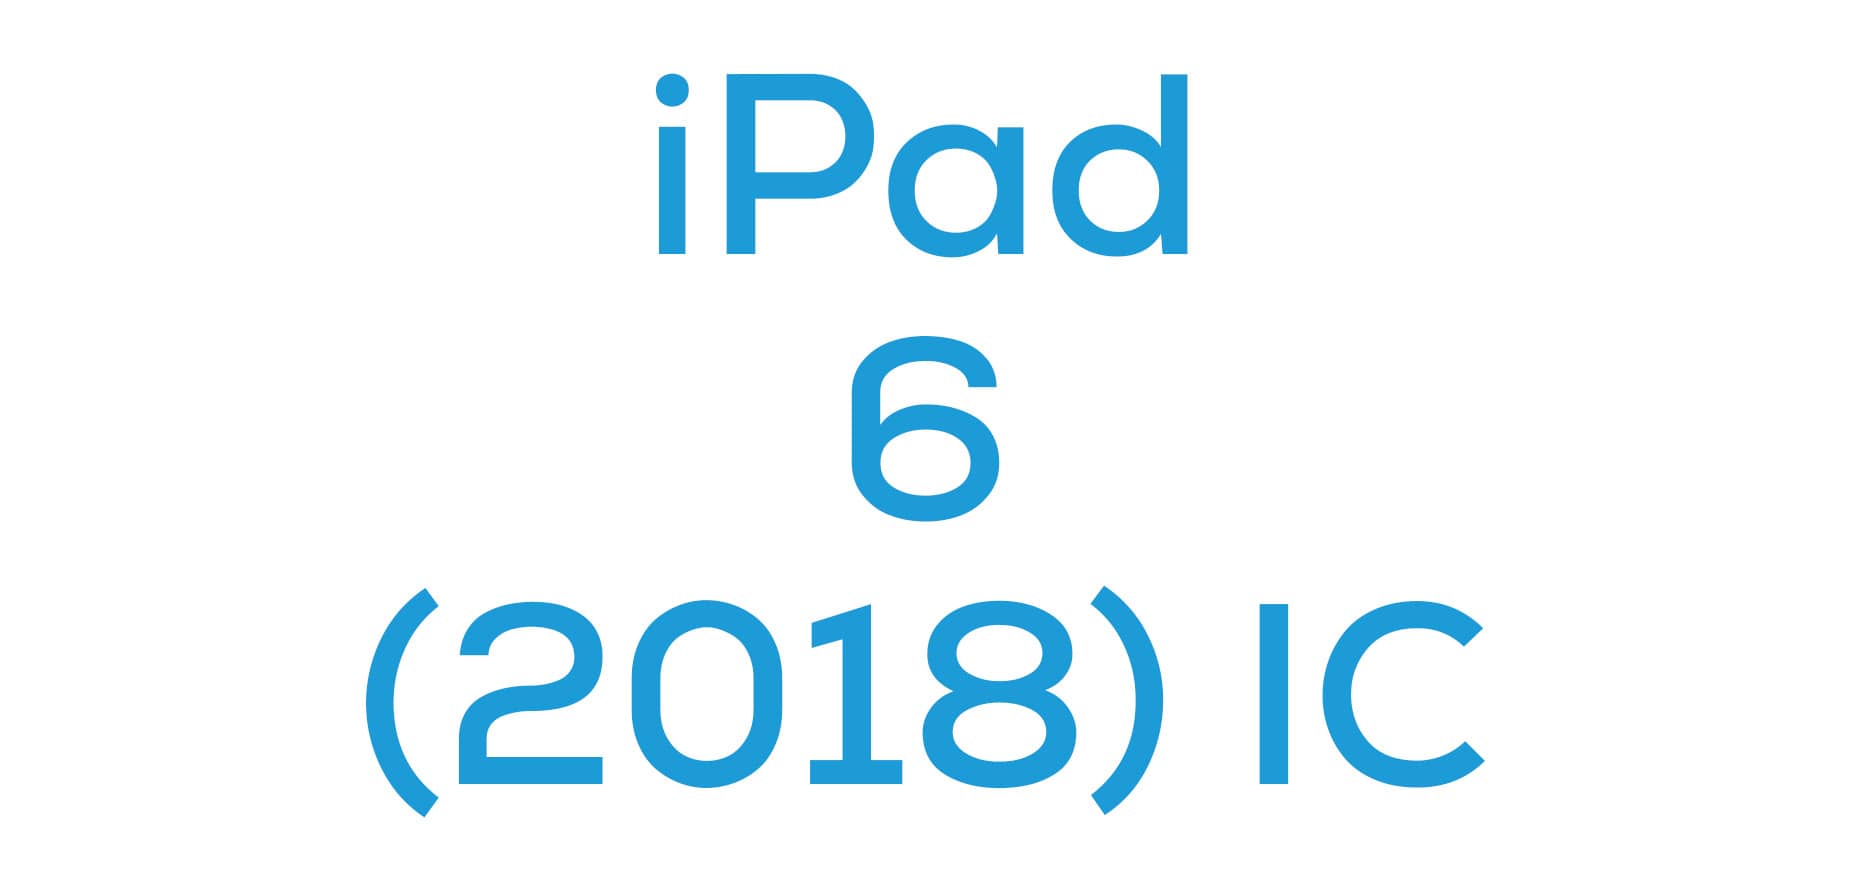 iPad 6 (2018) IC